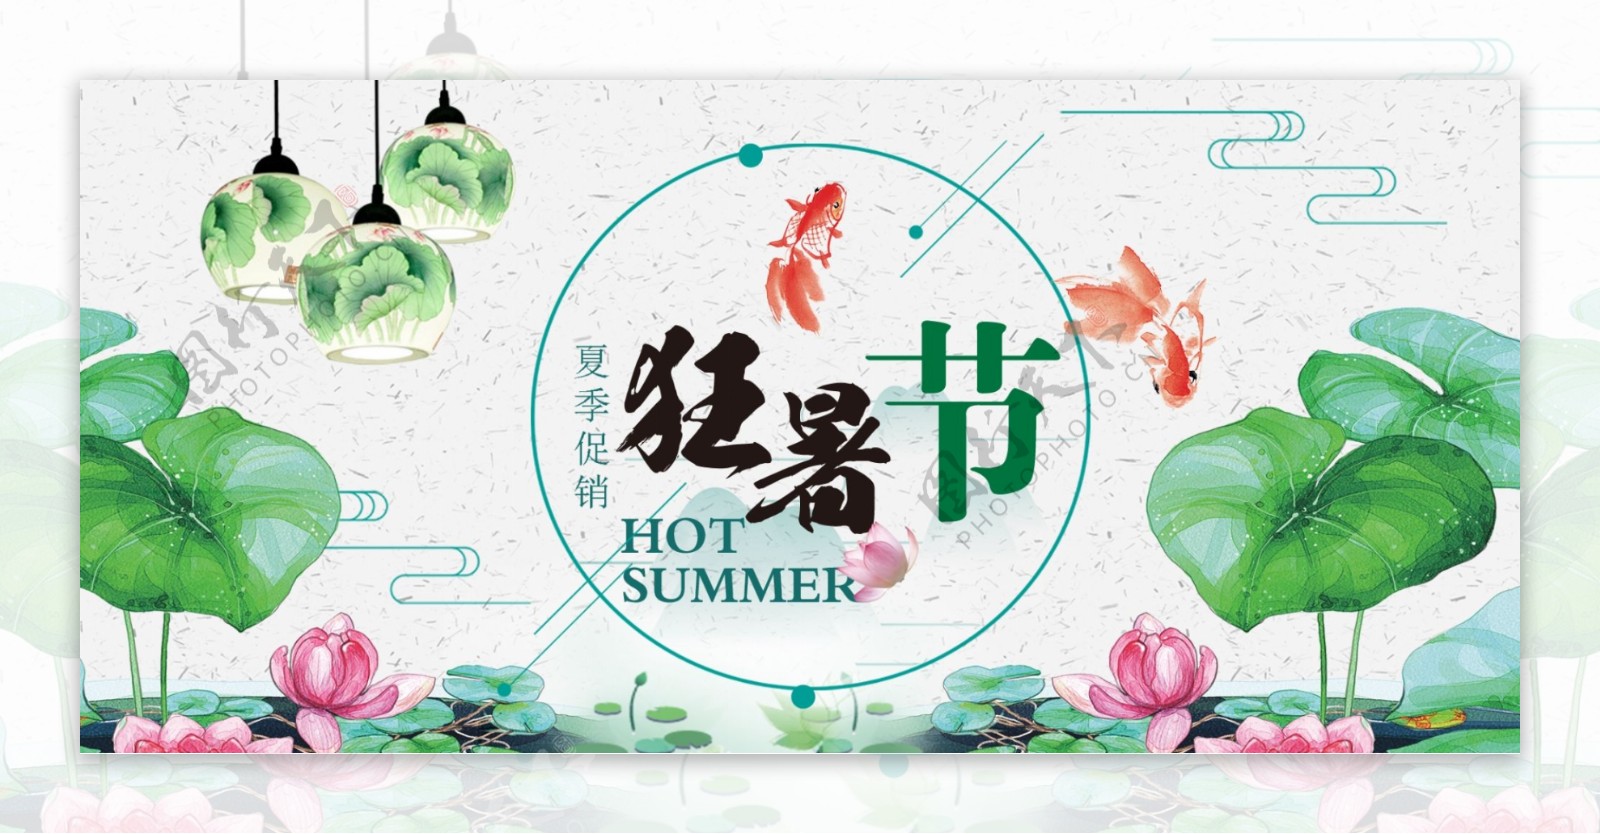 简约中国风狂暑季暑假暑期放假夏日夏天夏季